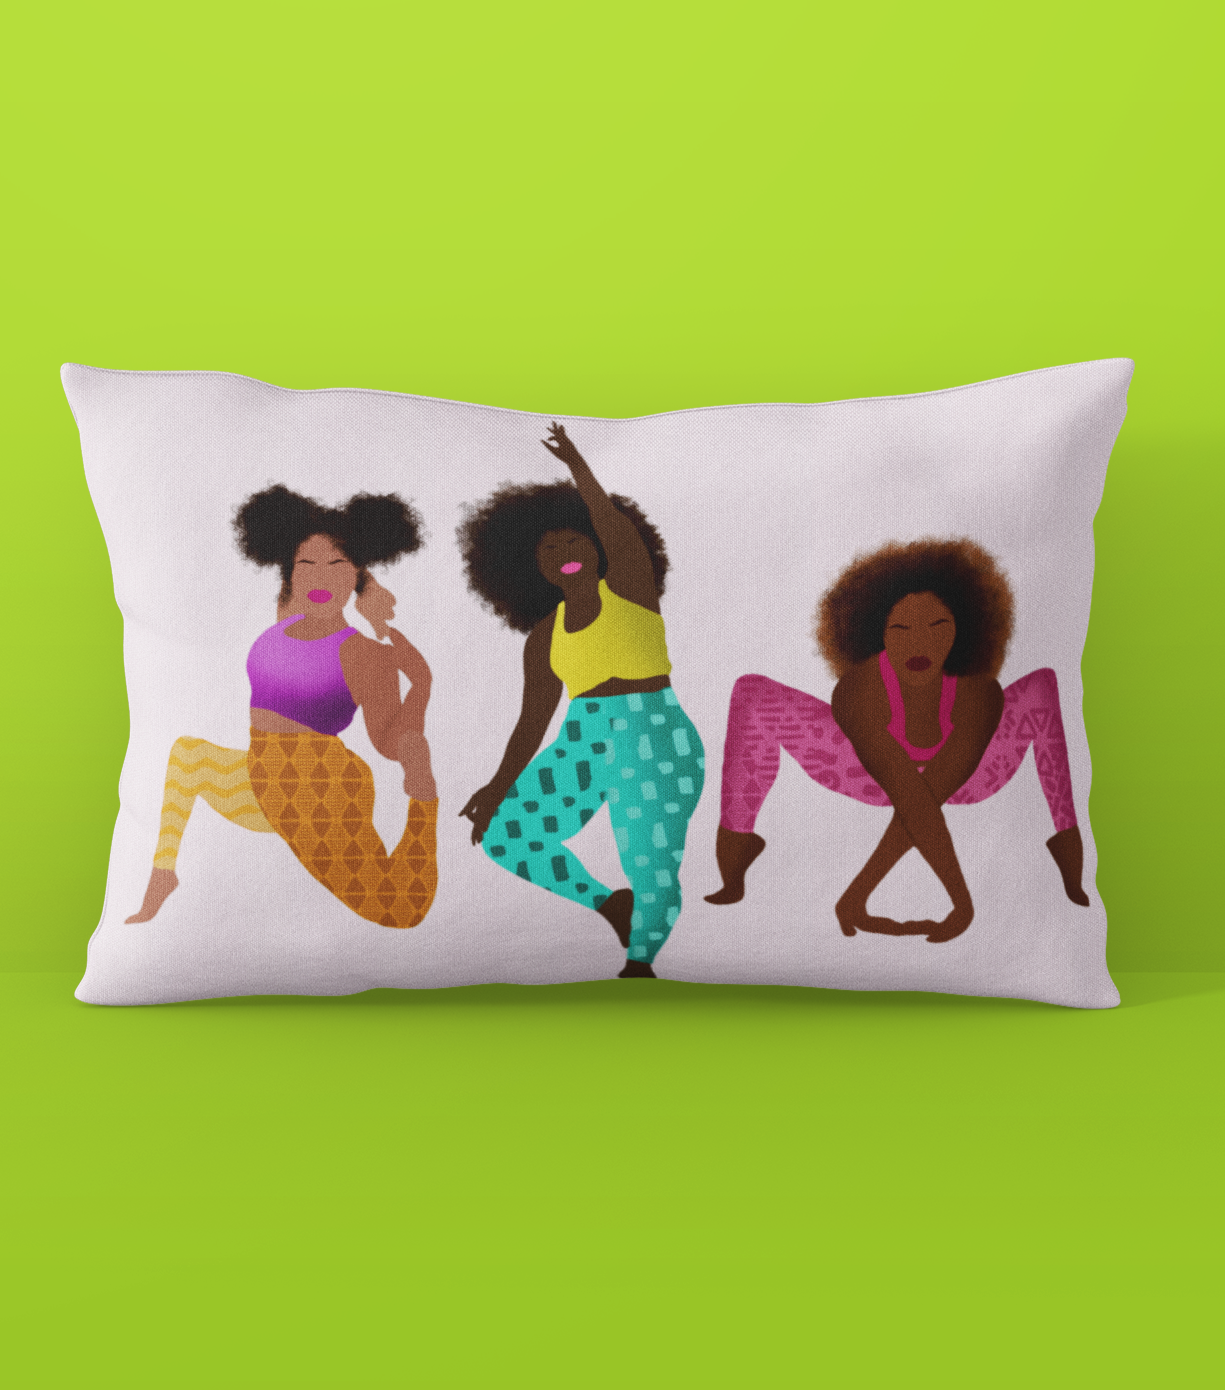 The Homegirls Lumbar Pillow